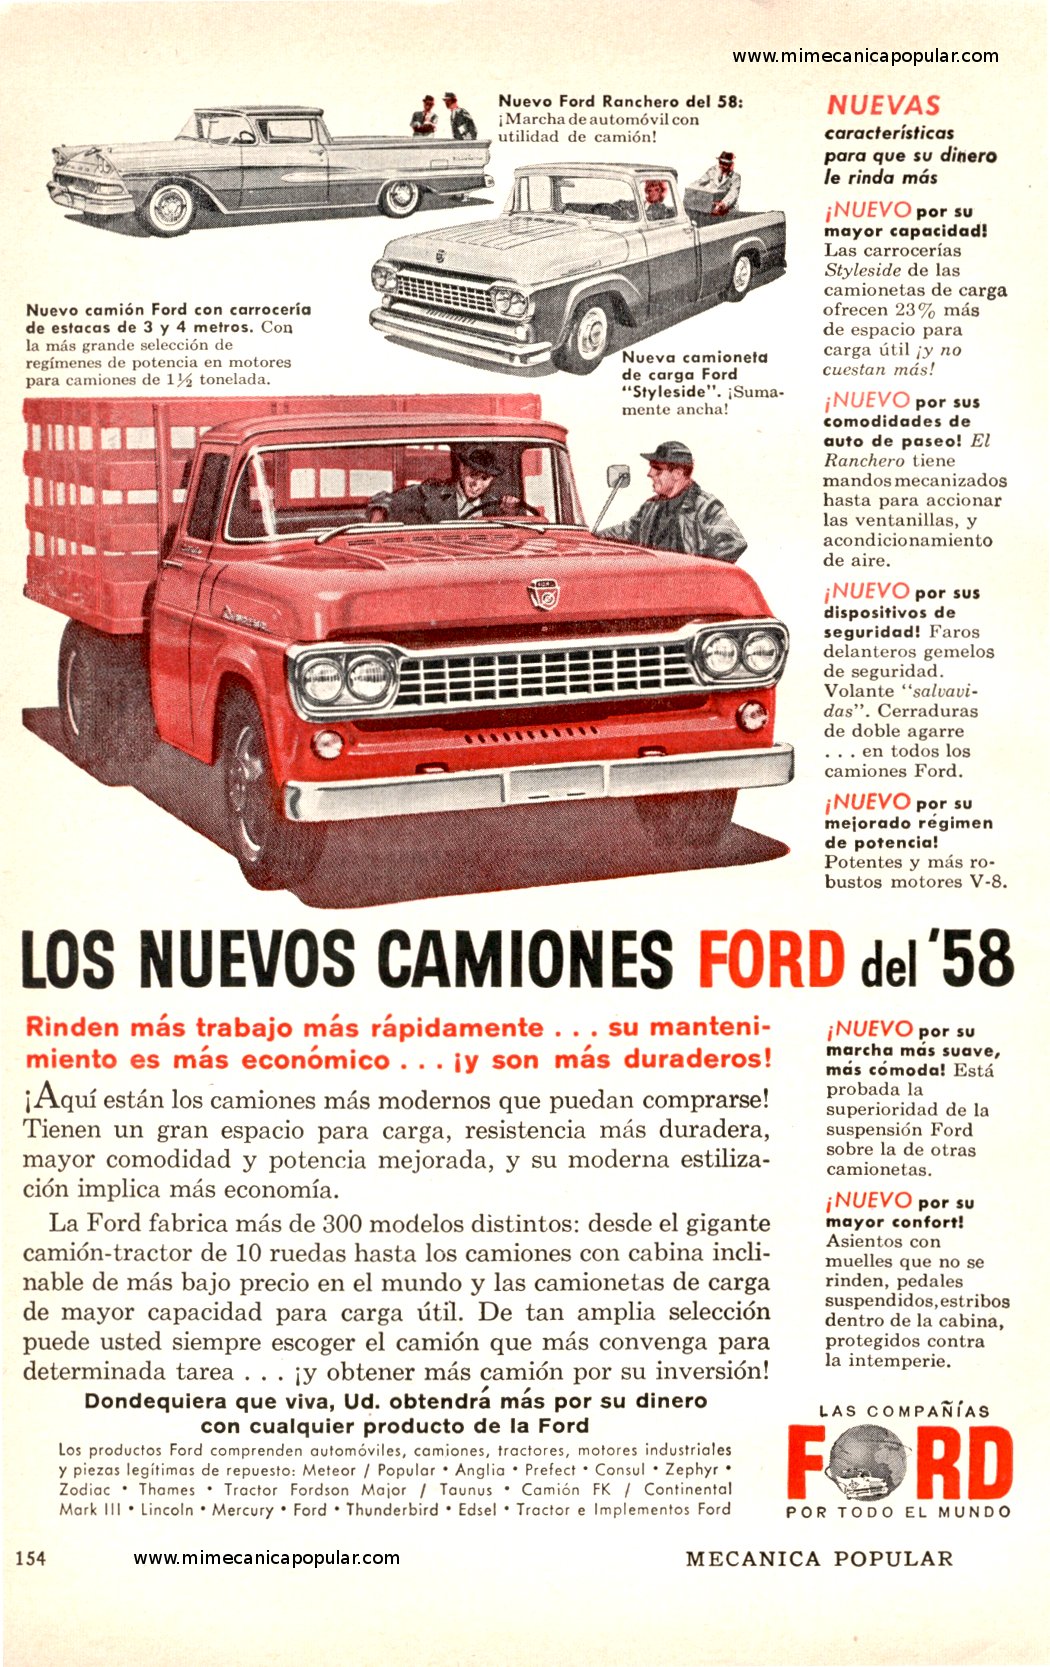 Publicidad - CAMIONES FORD - Febrero 1958